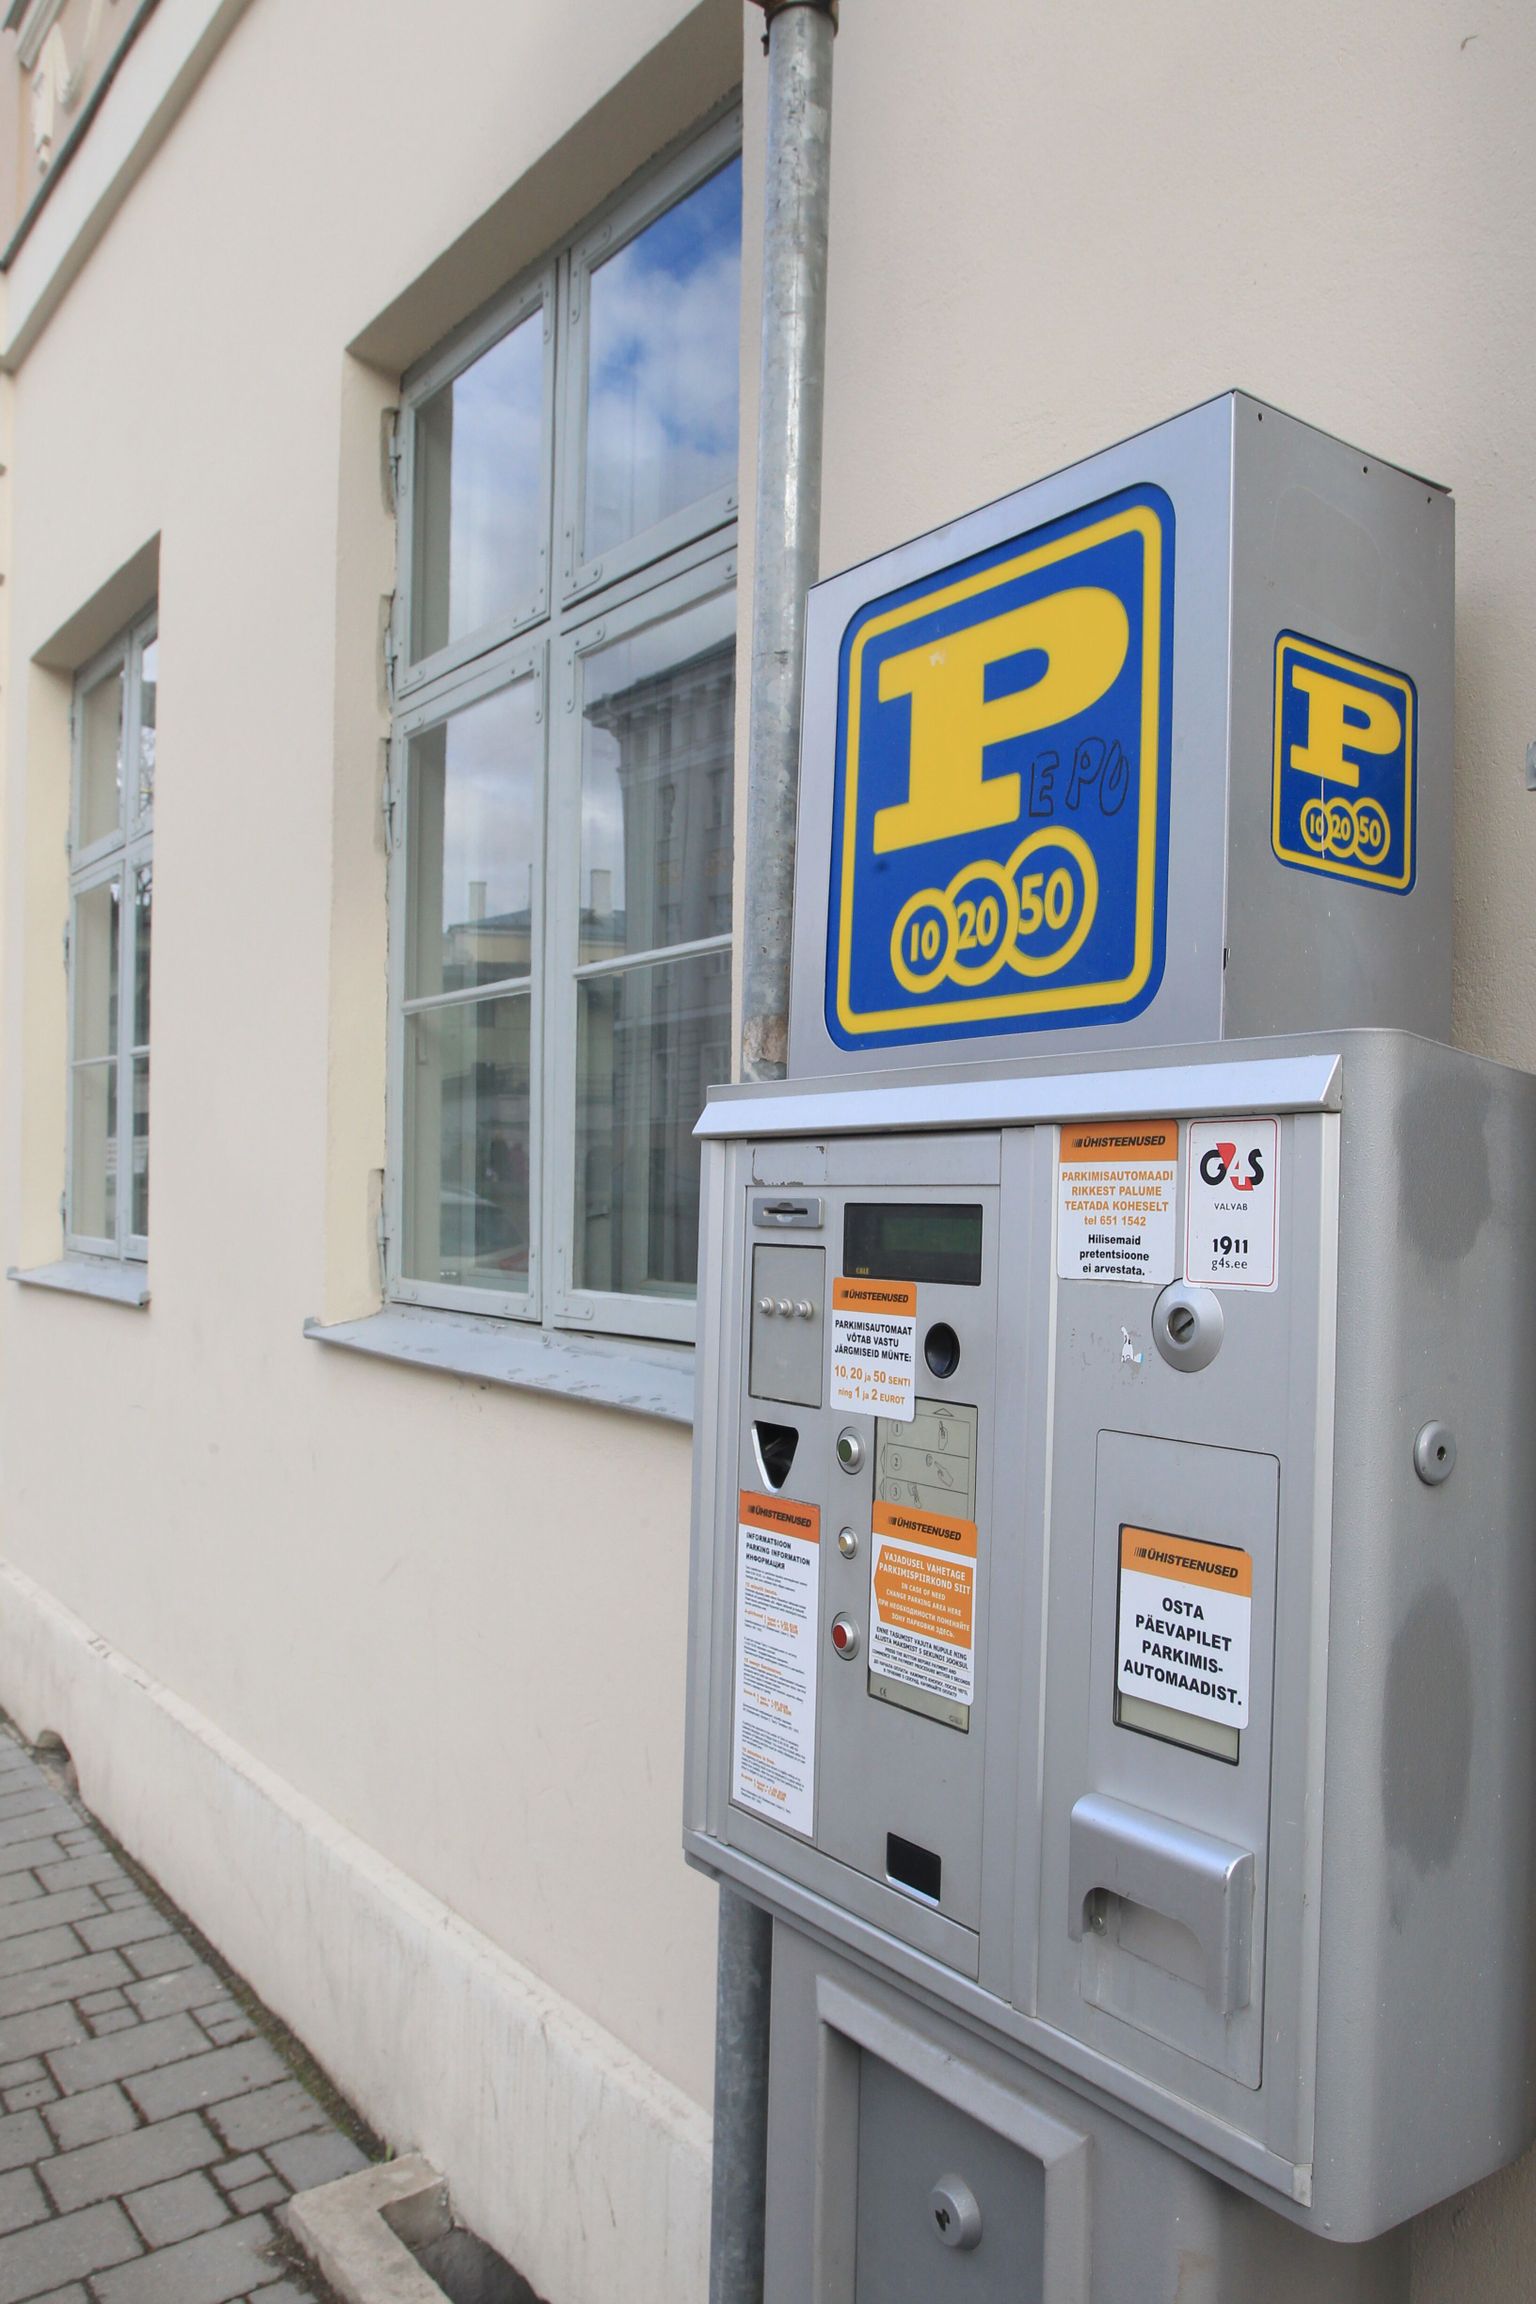 Praegused parkimisautomaadid vahetatakse sügiseks moodsamate vastu ning siis on võimalik maksta ka pangakaardiga.